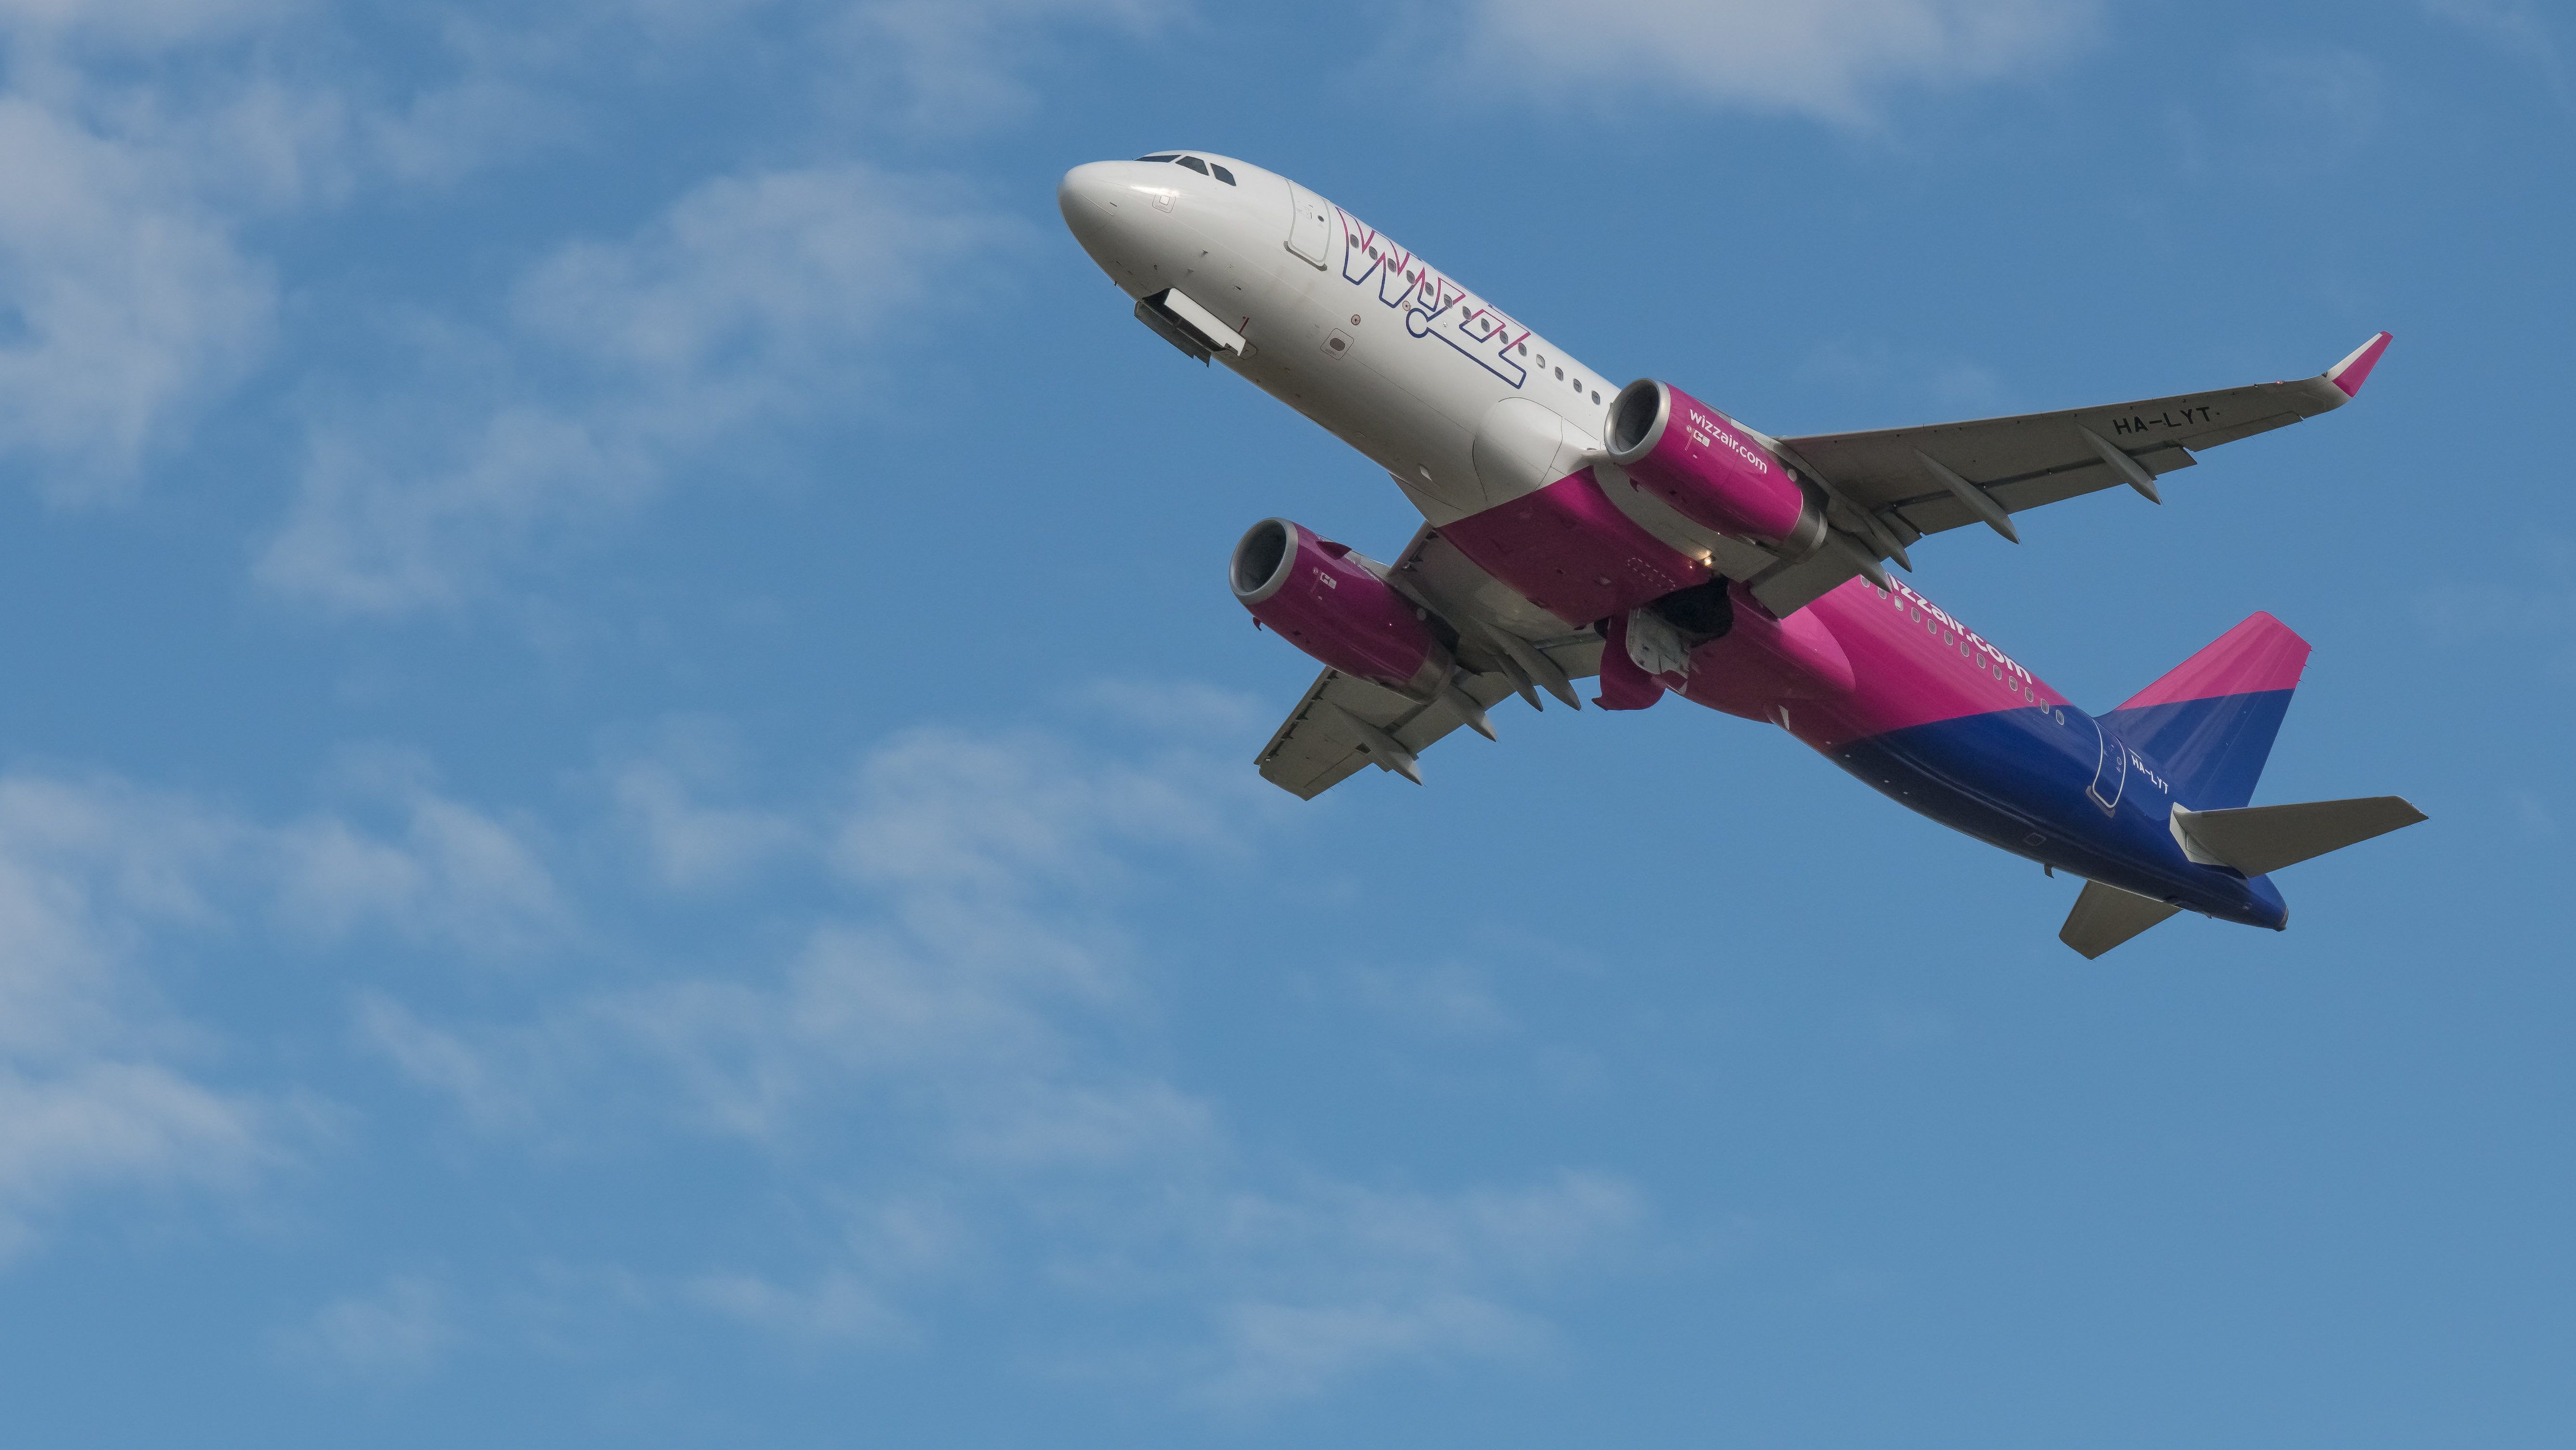 Koronavírus: újabb járatot töröl a Wizz Air